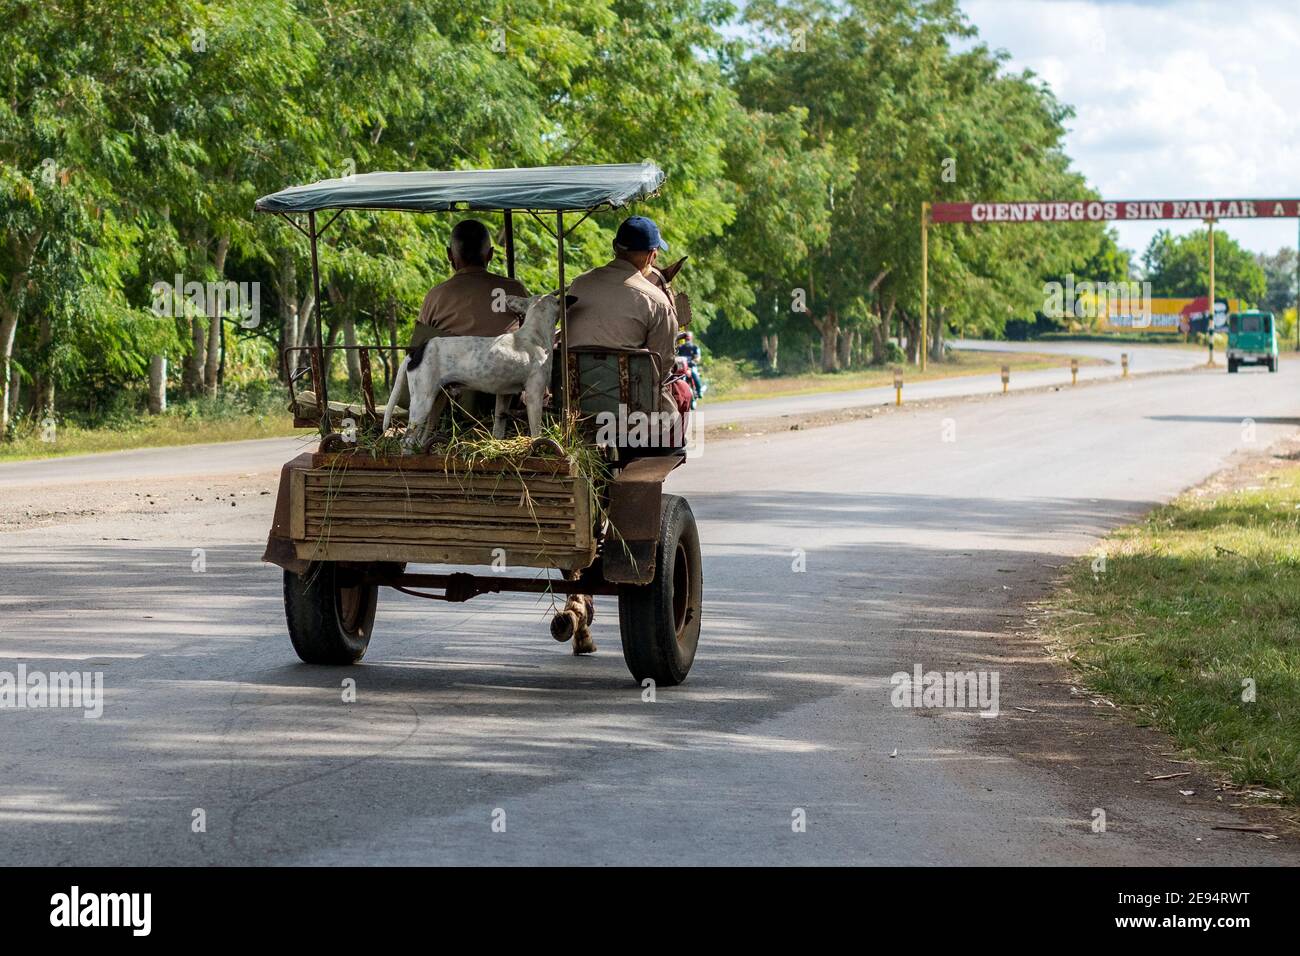 Perro en carro de caballos visto en la provincia de Cienfuegos. Estilos de vida del verdadero pueblo cubano. Foto de stock